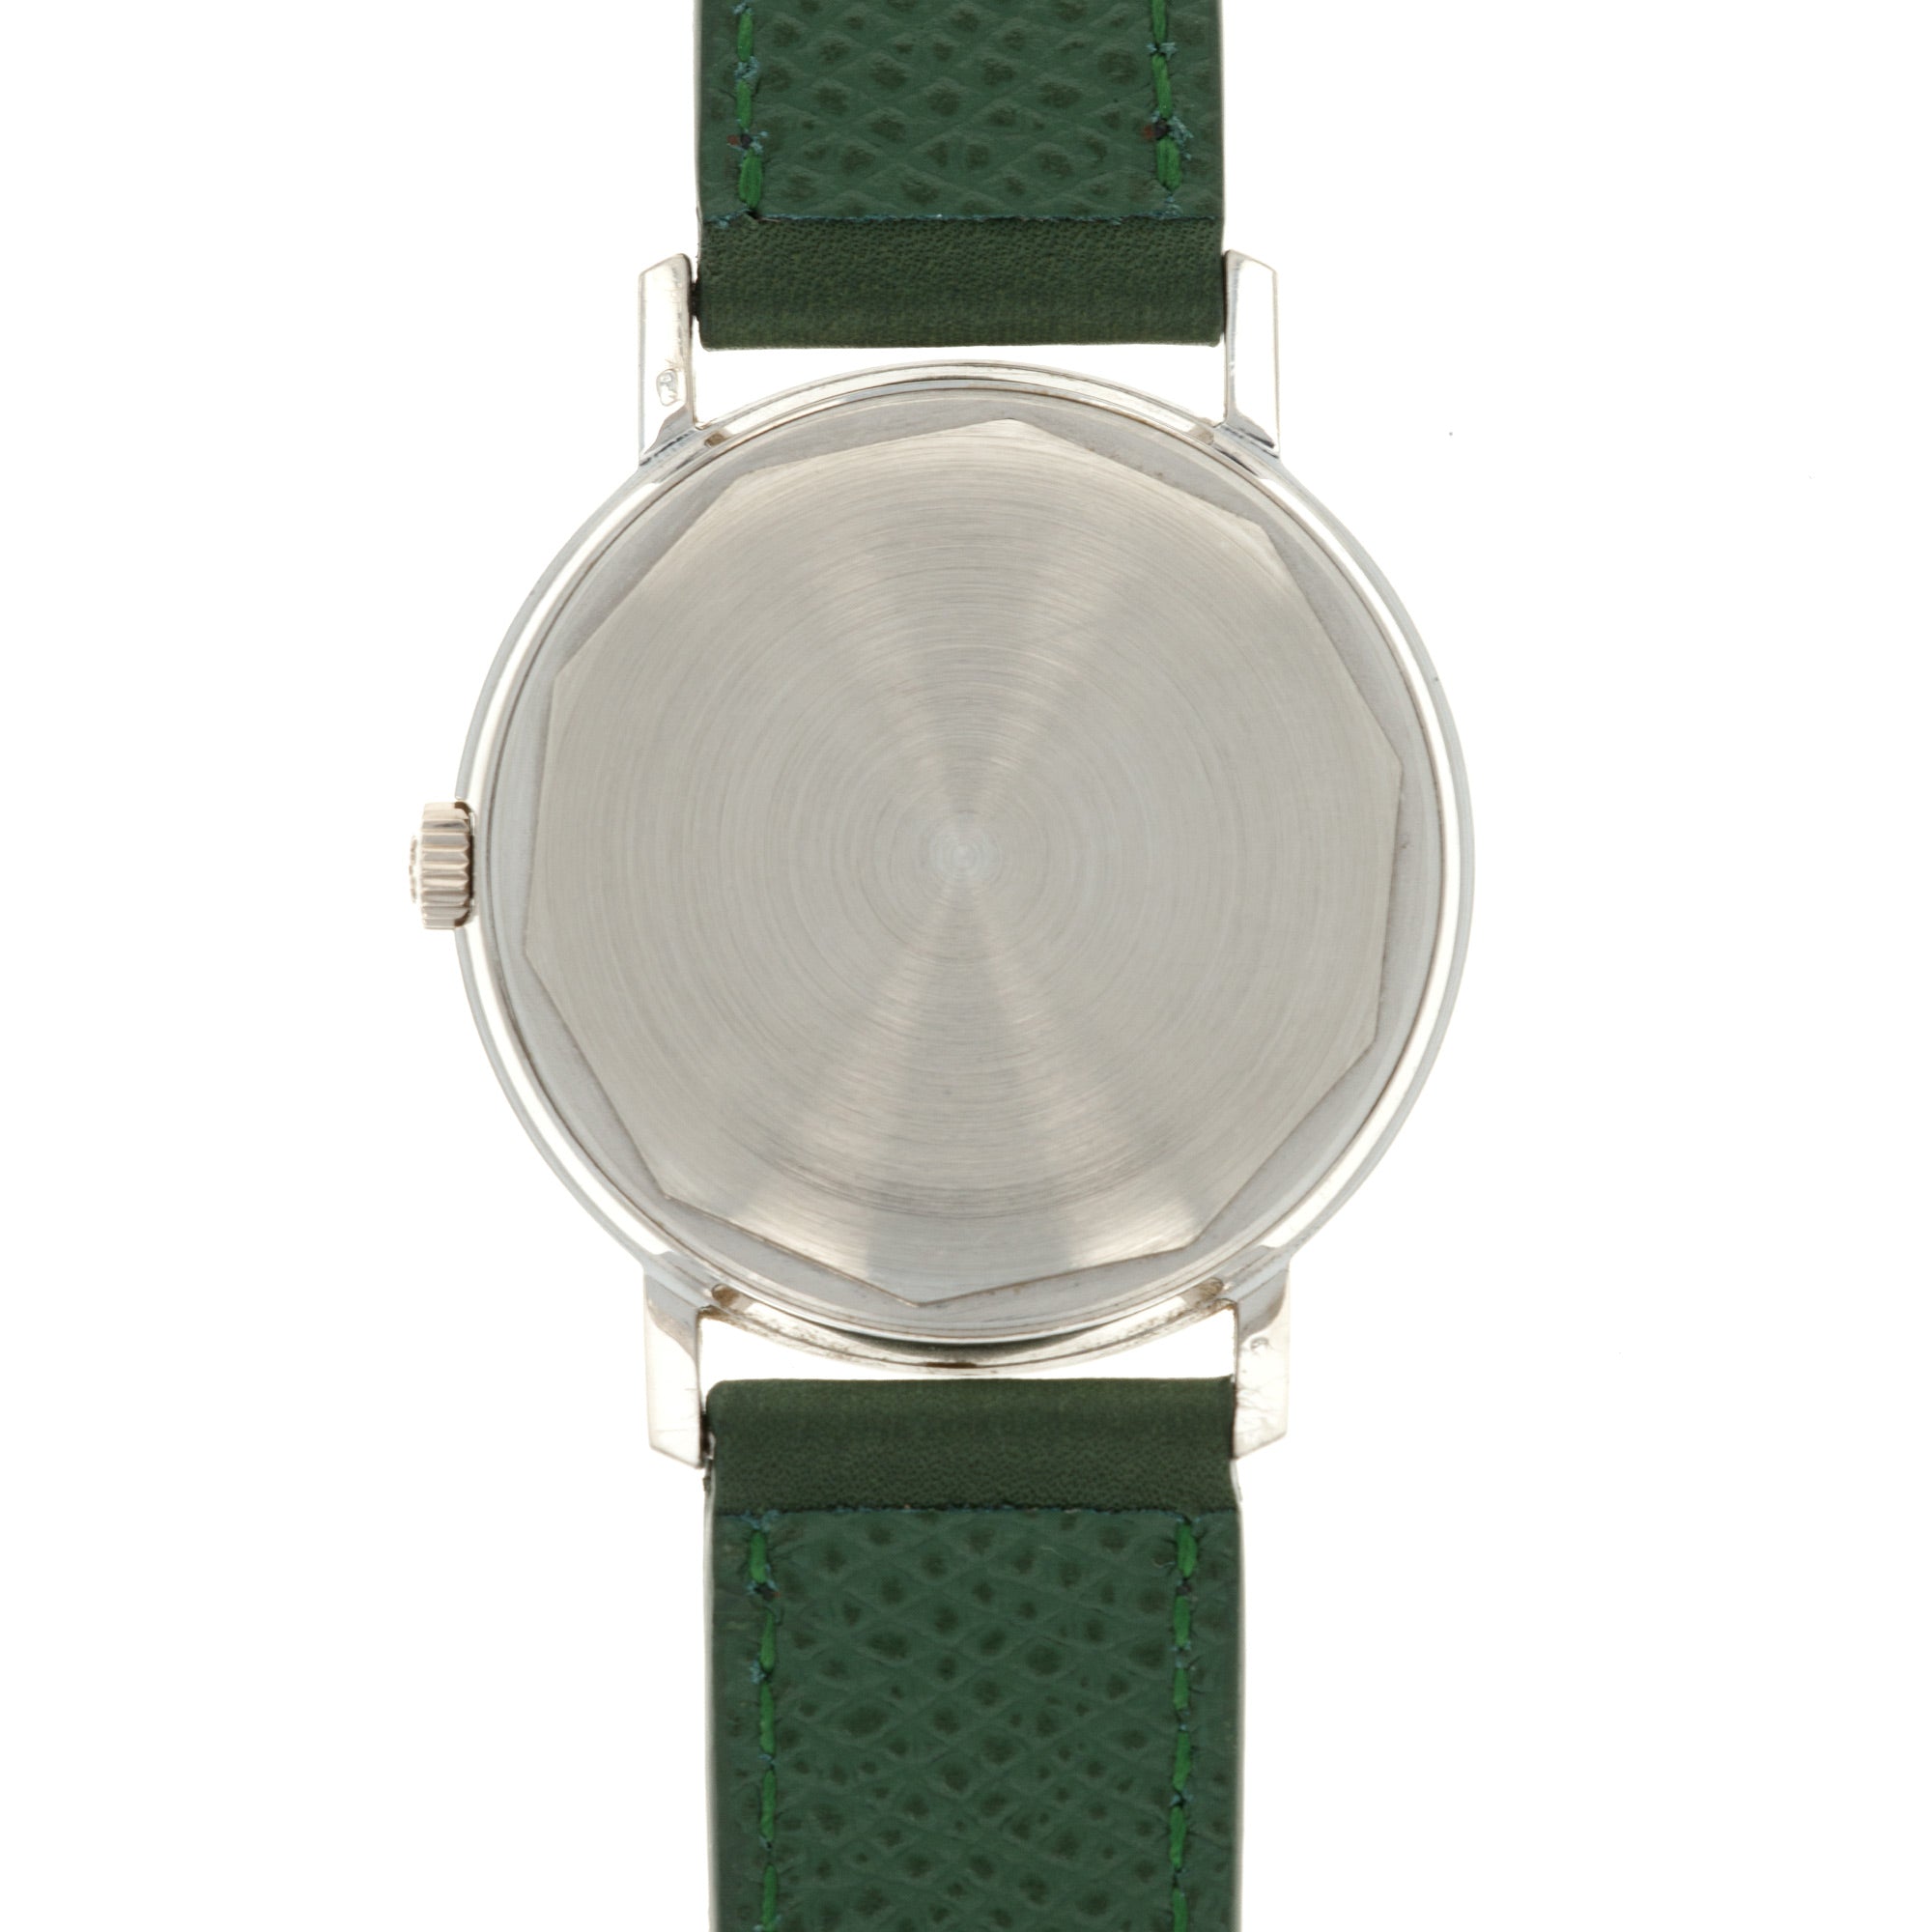 Patek Philippe - Patek Philippe White Gold Calatrava Ref. 3445 - The Keystone Watches